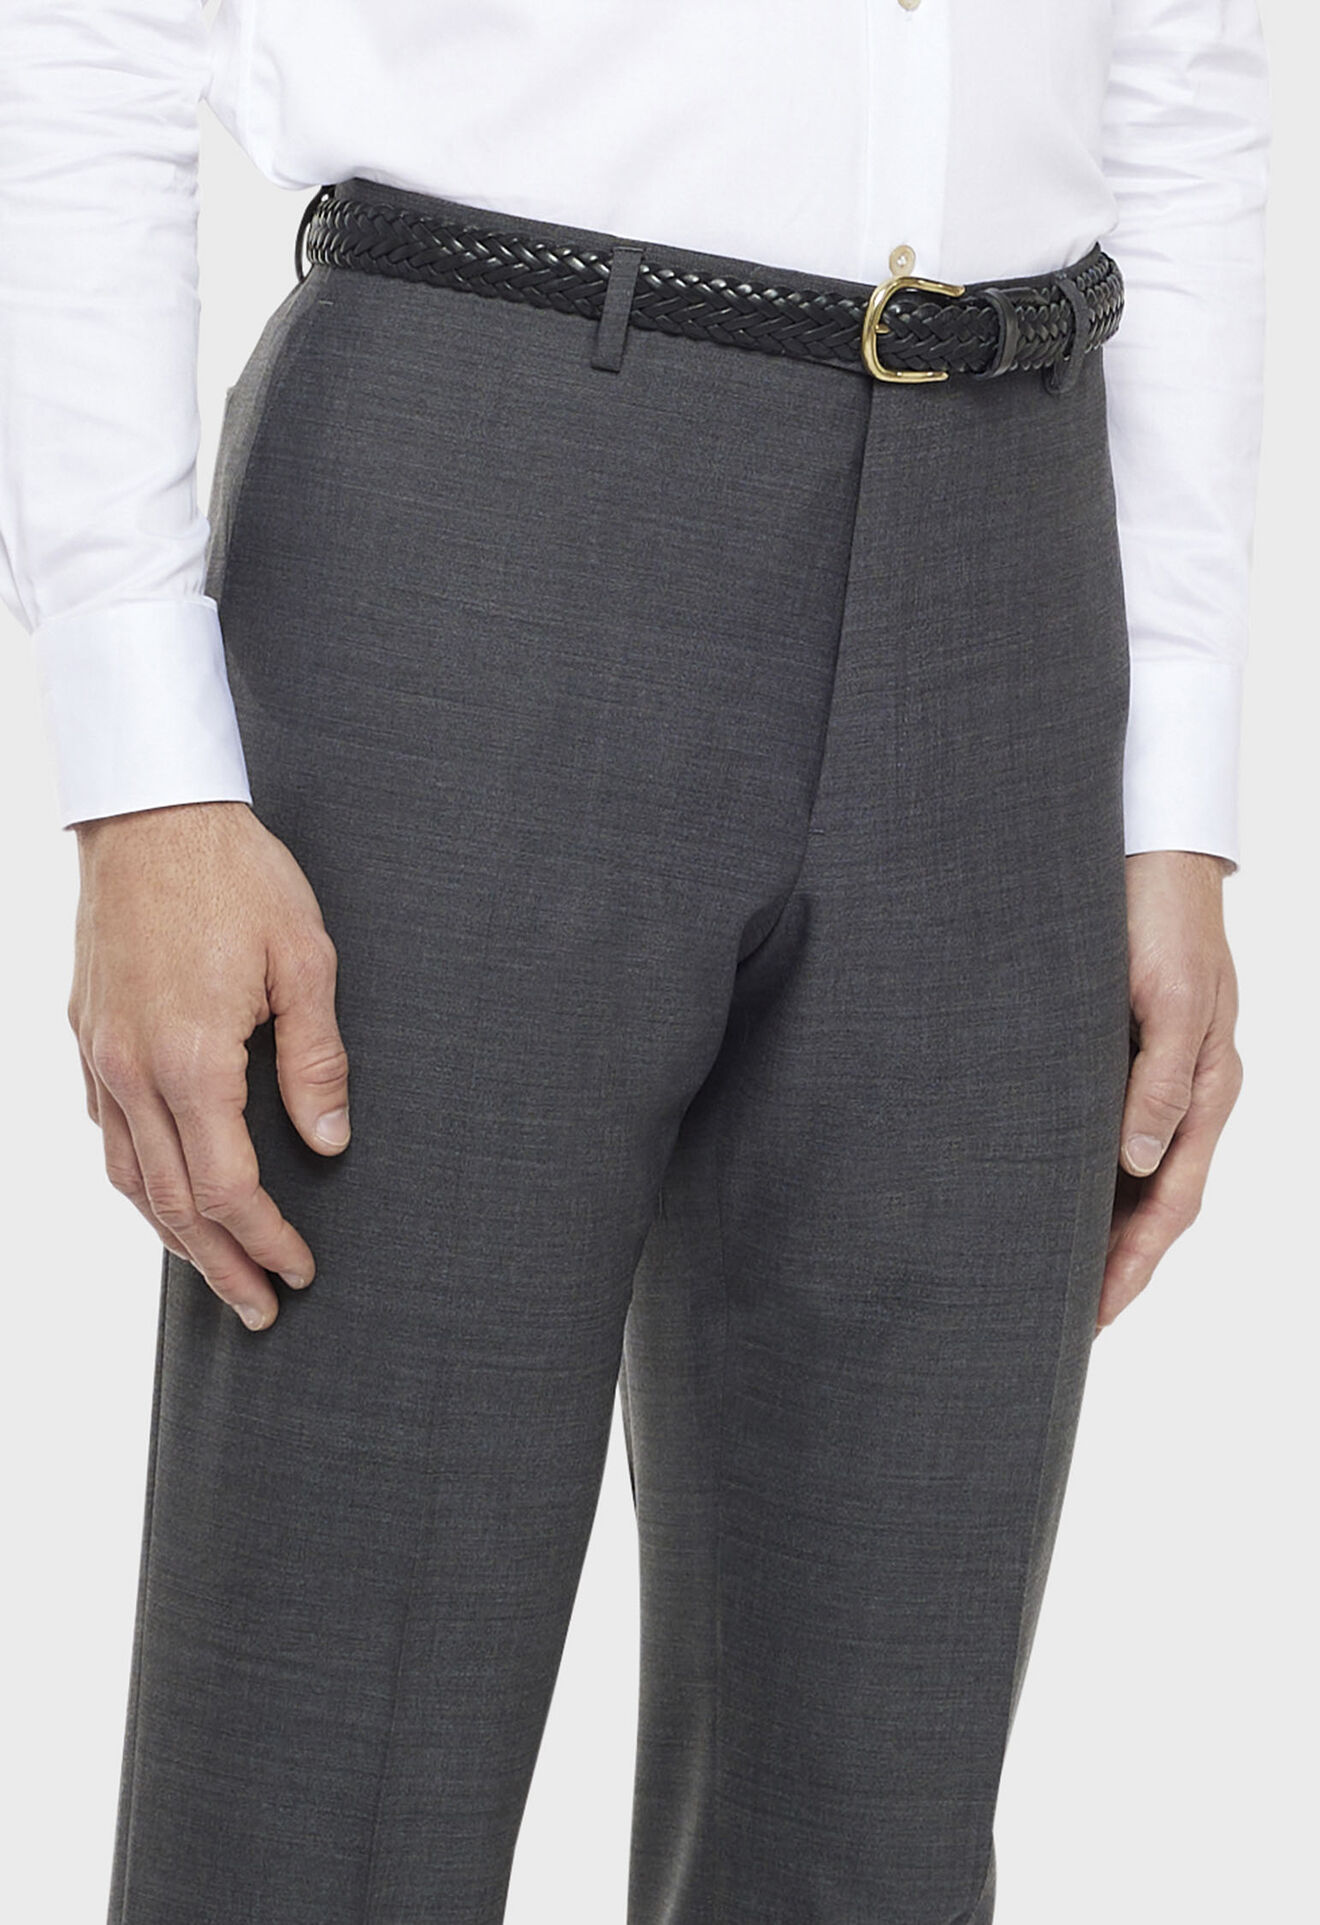 Grey 100% virgin wool trousers in Grey: Luxury Italian Trousers for Men